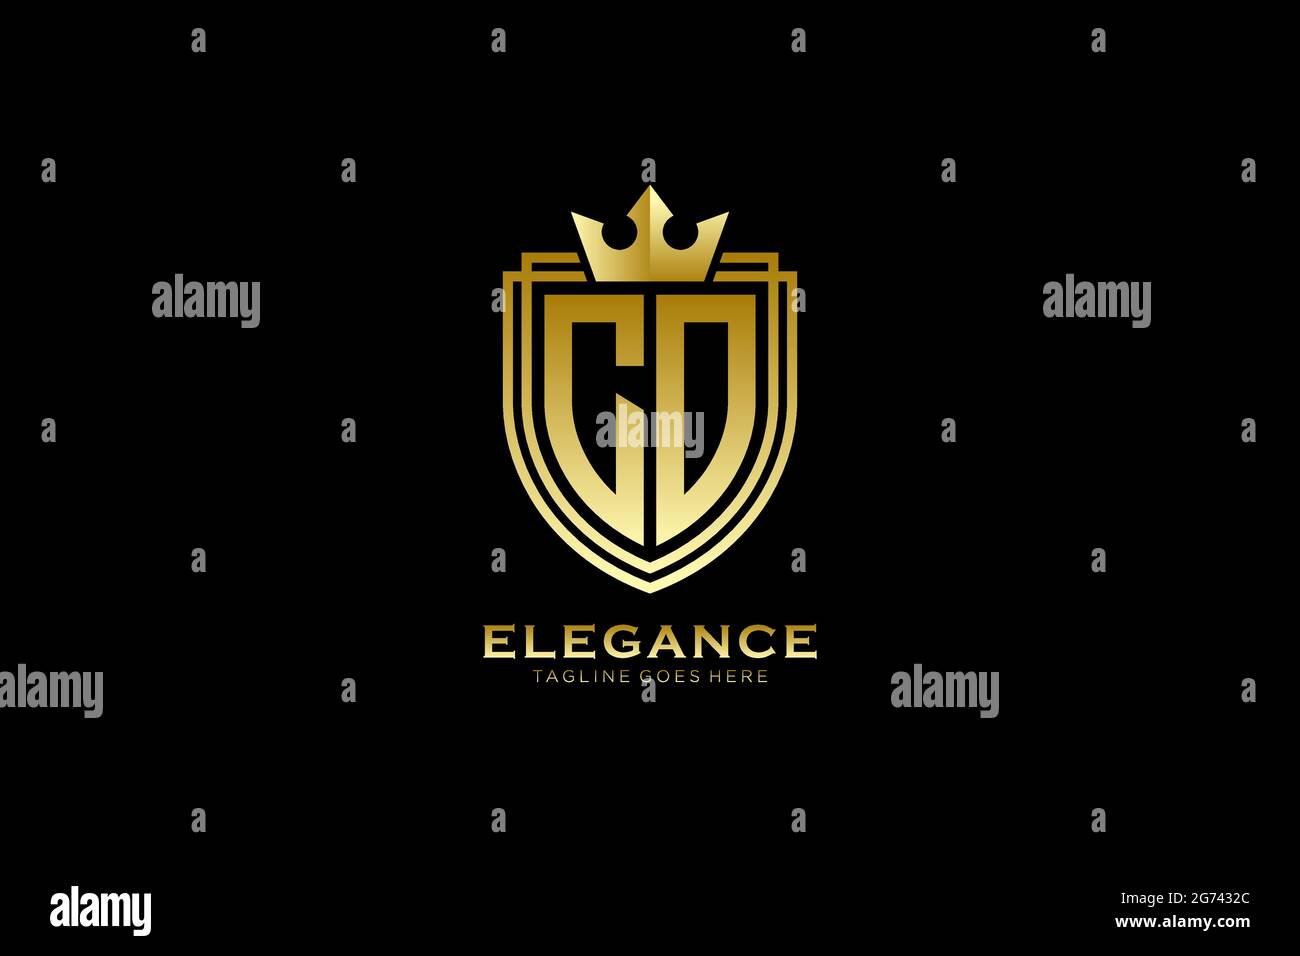 CO Elegantes Luxus-Monogramm-Logo oder Badge-Vorlage mit Rollen und königlicher Krone - perfekt für luxuriöse Branding-Projekte Stock Vektor